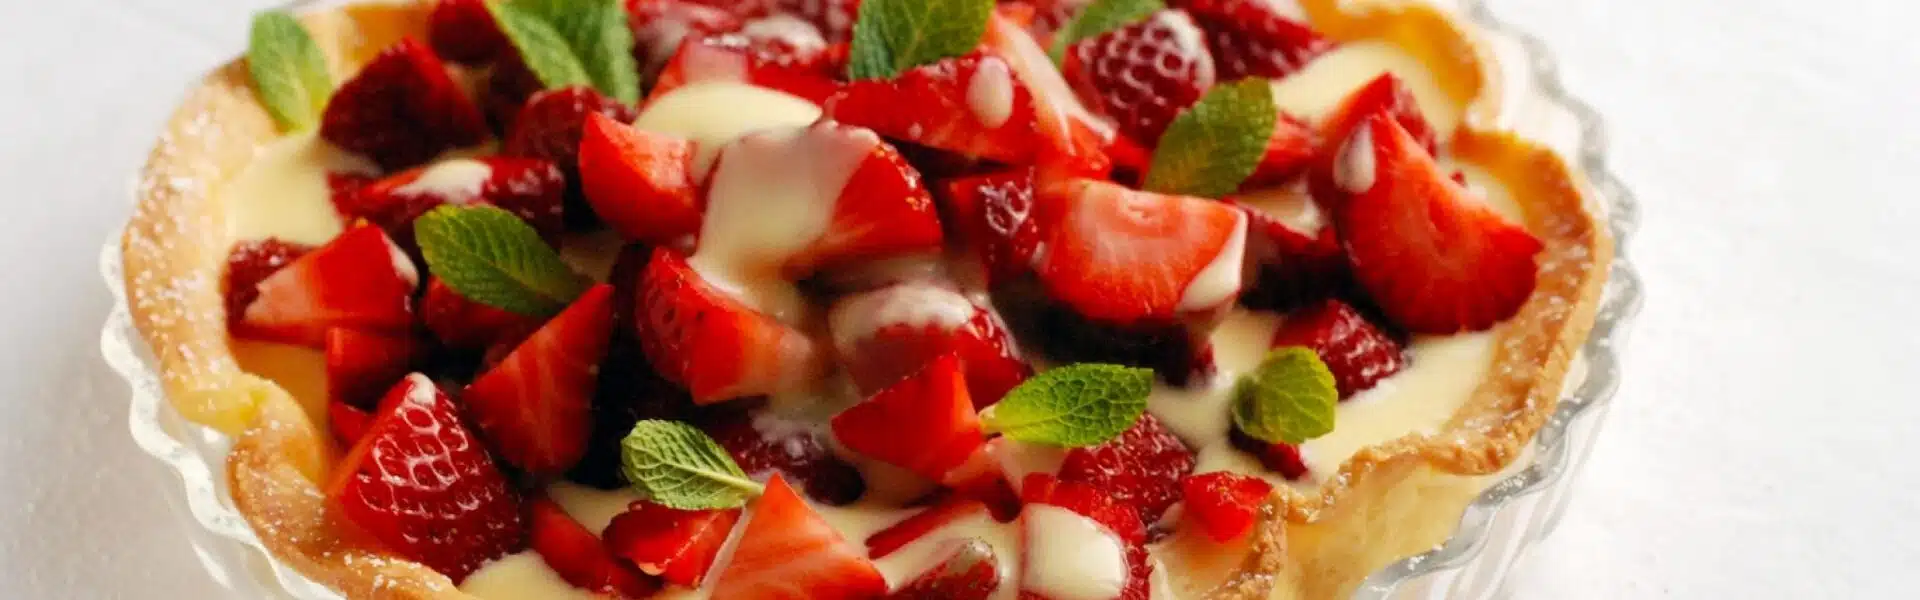 Tarte aux fraises à la crème patissière - 3186